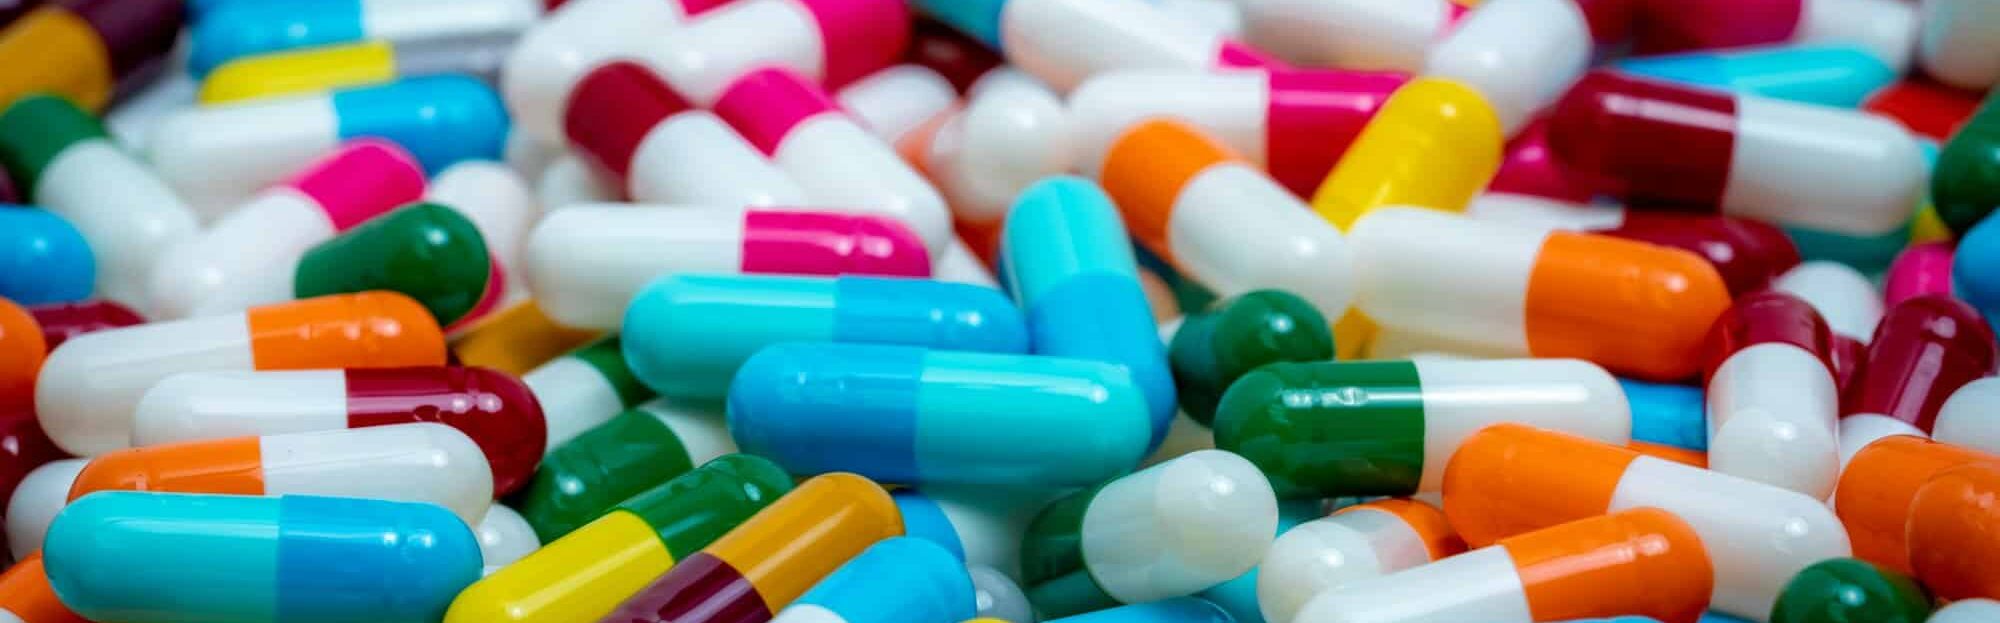 Αντιβιοτικά: Σε ποιες λοιμώξεις δεν είναι αποτελεσματικά